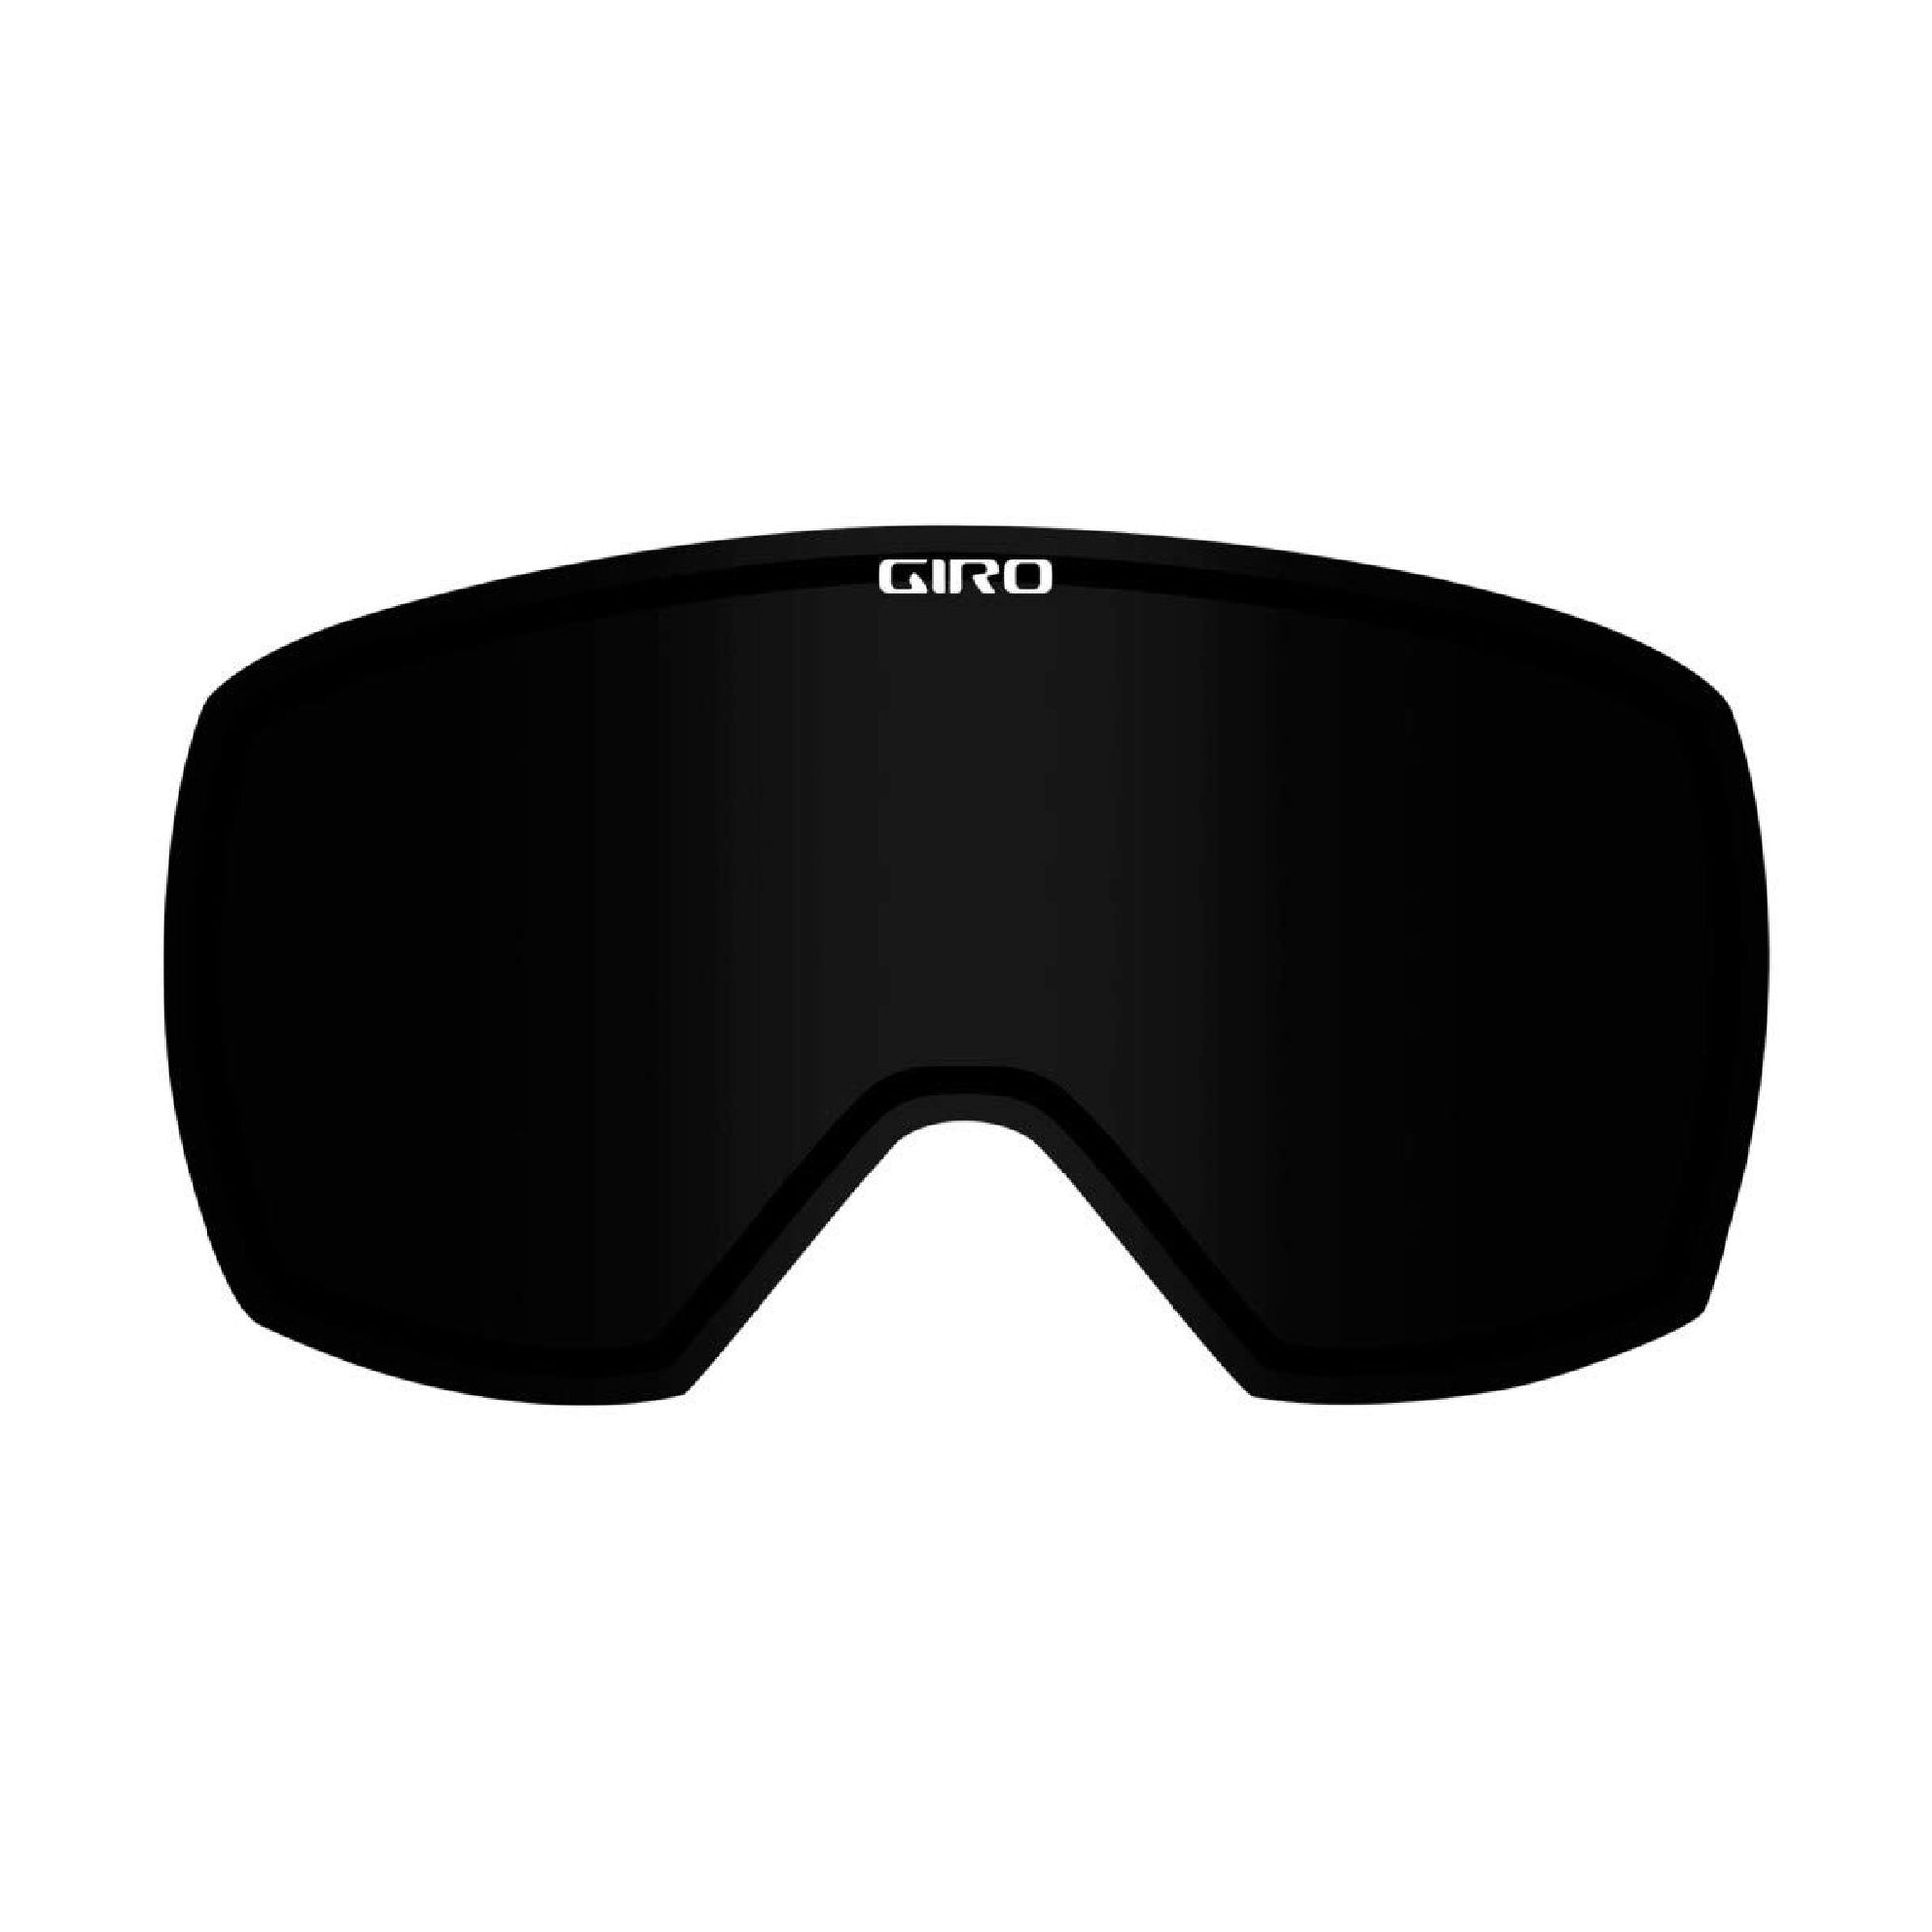 Giro Balance/Facet Replacement Lens - Openbox Ultra Black - Giro Snow Lenses